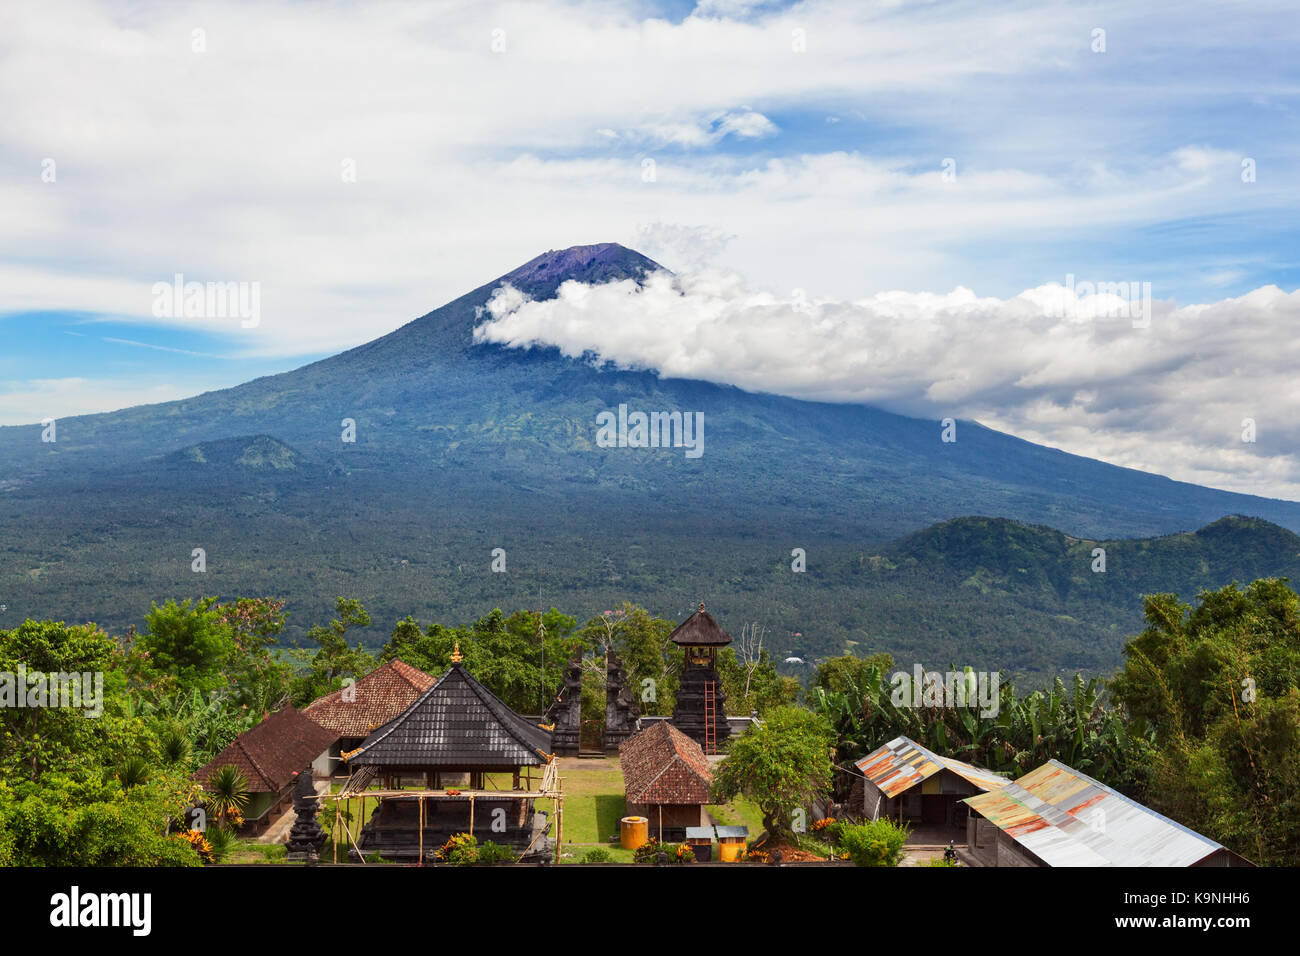 Blick von lempuyang Berg zu traditionellen balinesischen Tempel auf dem Berg Agung Pisten Hintergrund. Mount Agung ist höchsten aktiven Vulkan auf der Insel Bali Stockfoto